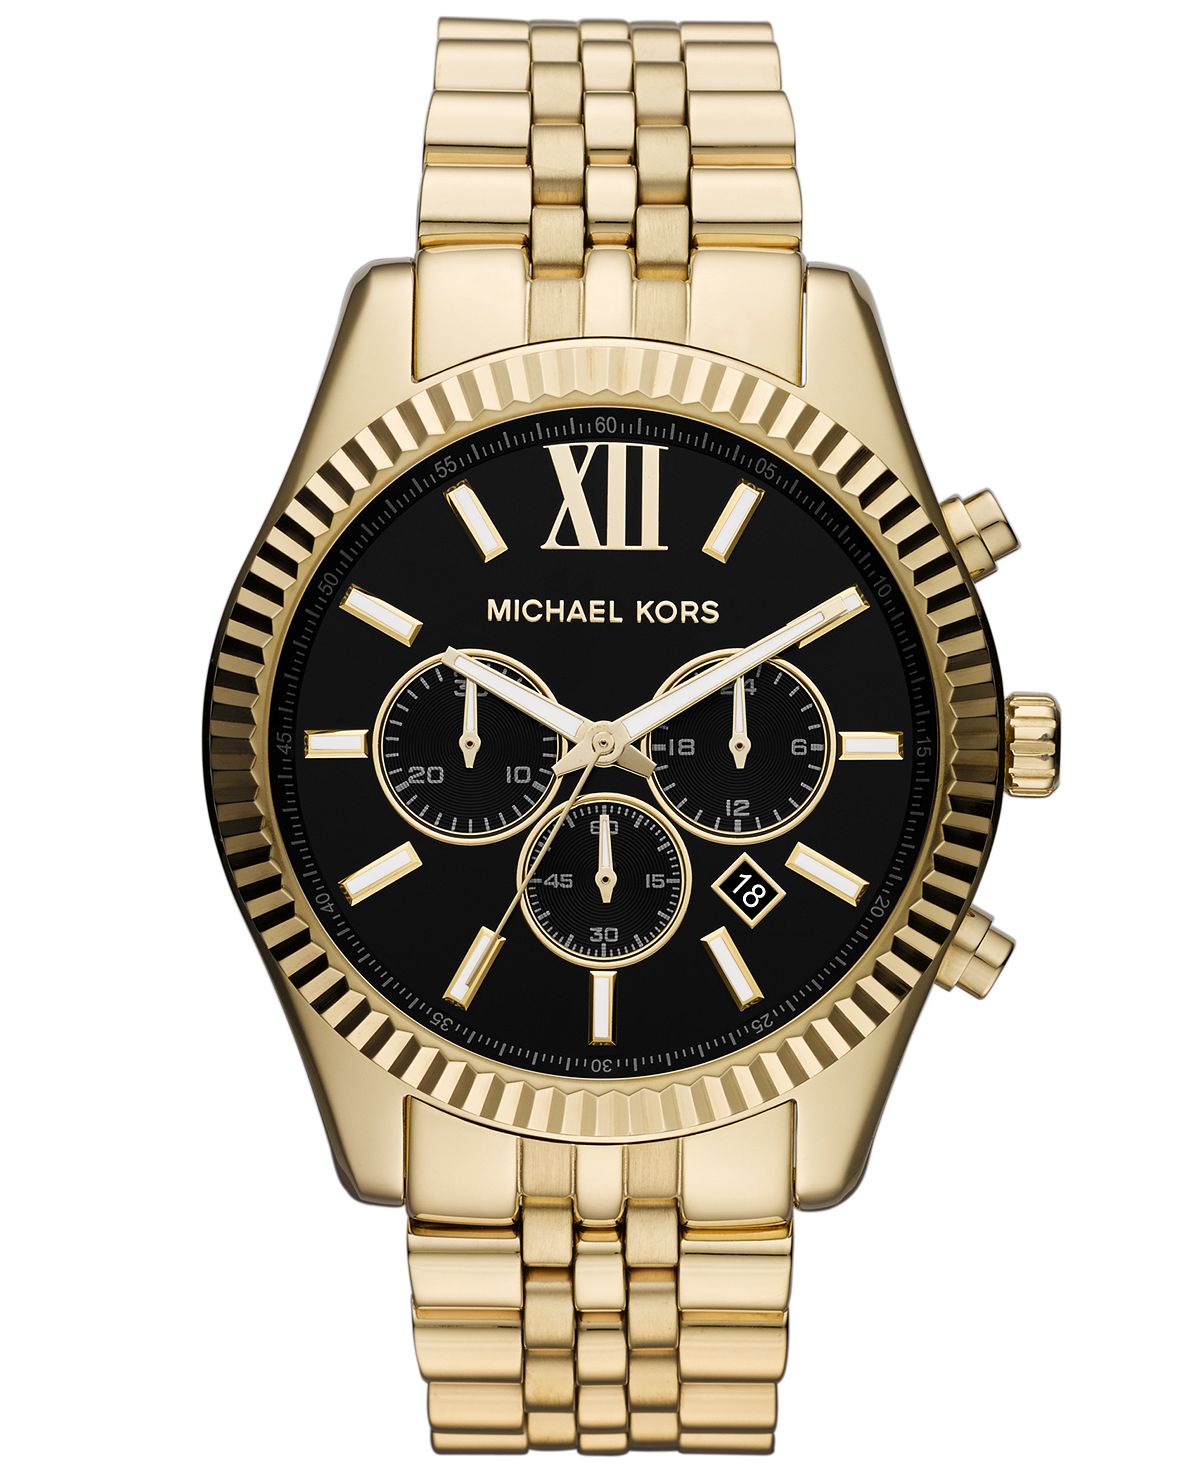 Мужские часы-хронограф Lexington с золотистым браслетом из нержавеющей стали, 45 мм, MK8286 Michael Kors цена и фото